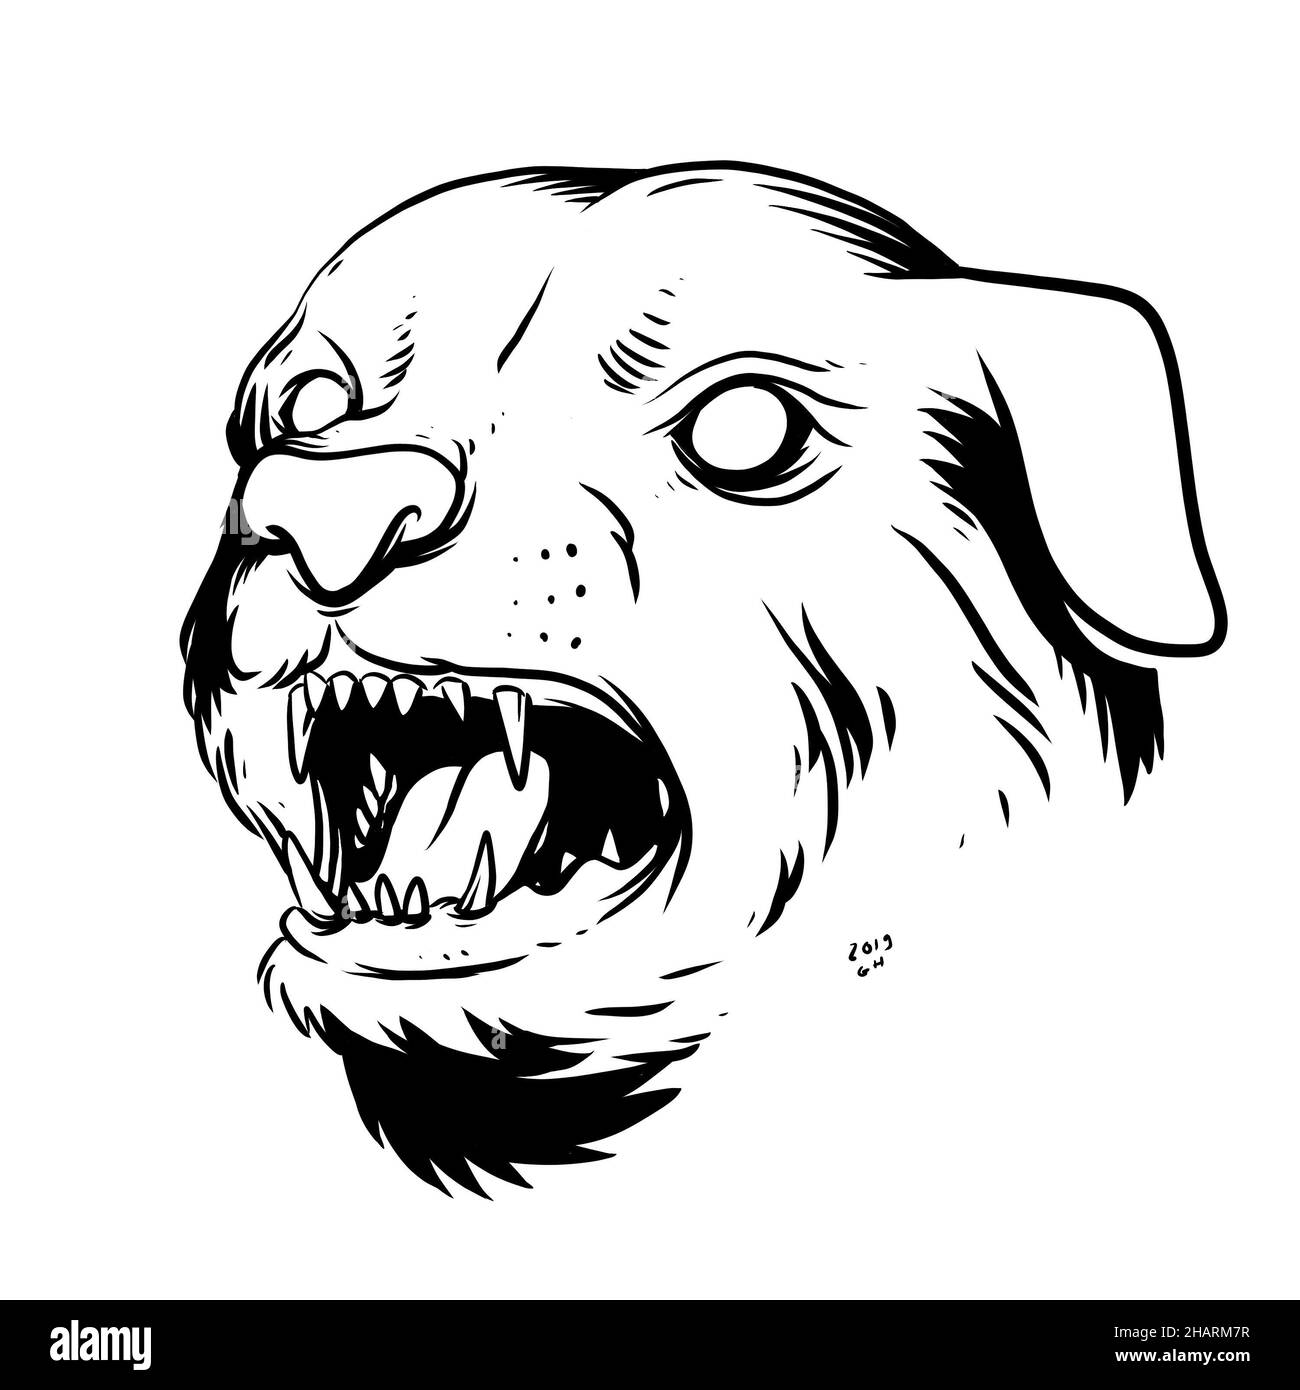 un visage de chien menaçant. une illustration dessinée à la main d'une tête d'animal sauvage. dessin de dessin au trait pour emblème, affiche, autocollant, tatouage, etc Banque D'Images